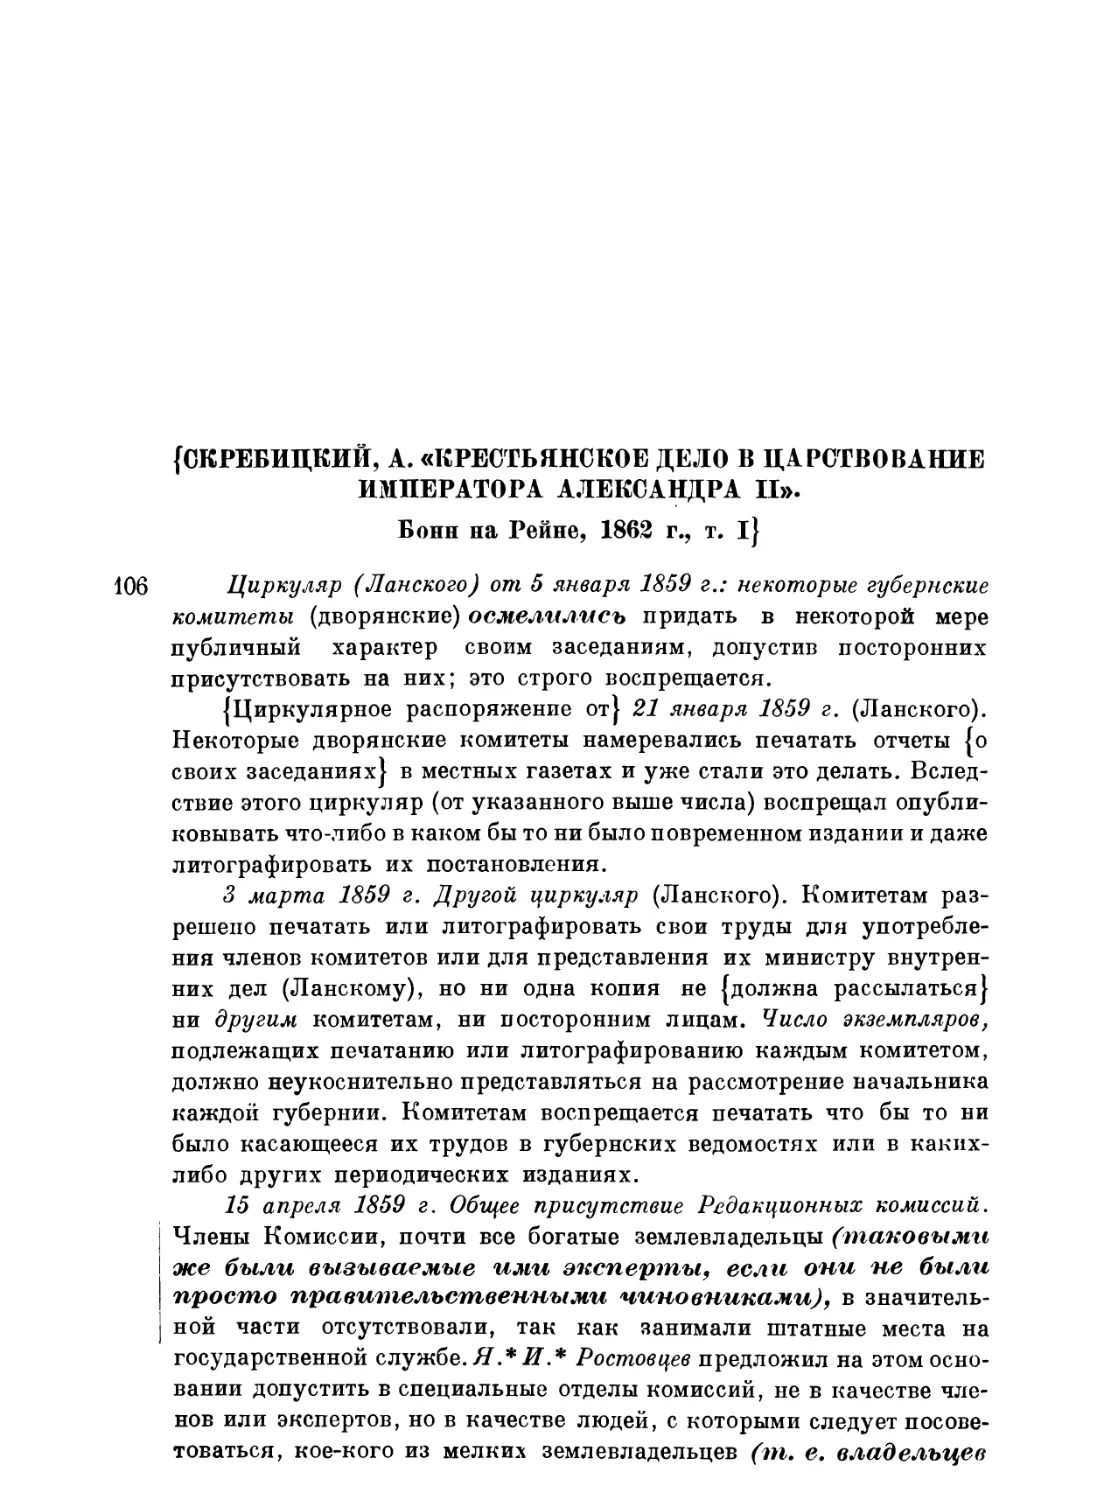 Выписки из работы Скребицкого «Крестьянское дело в царствование имп. Александра II»